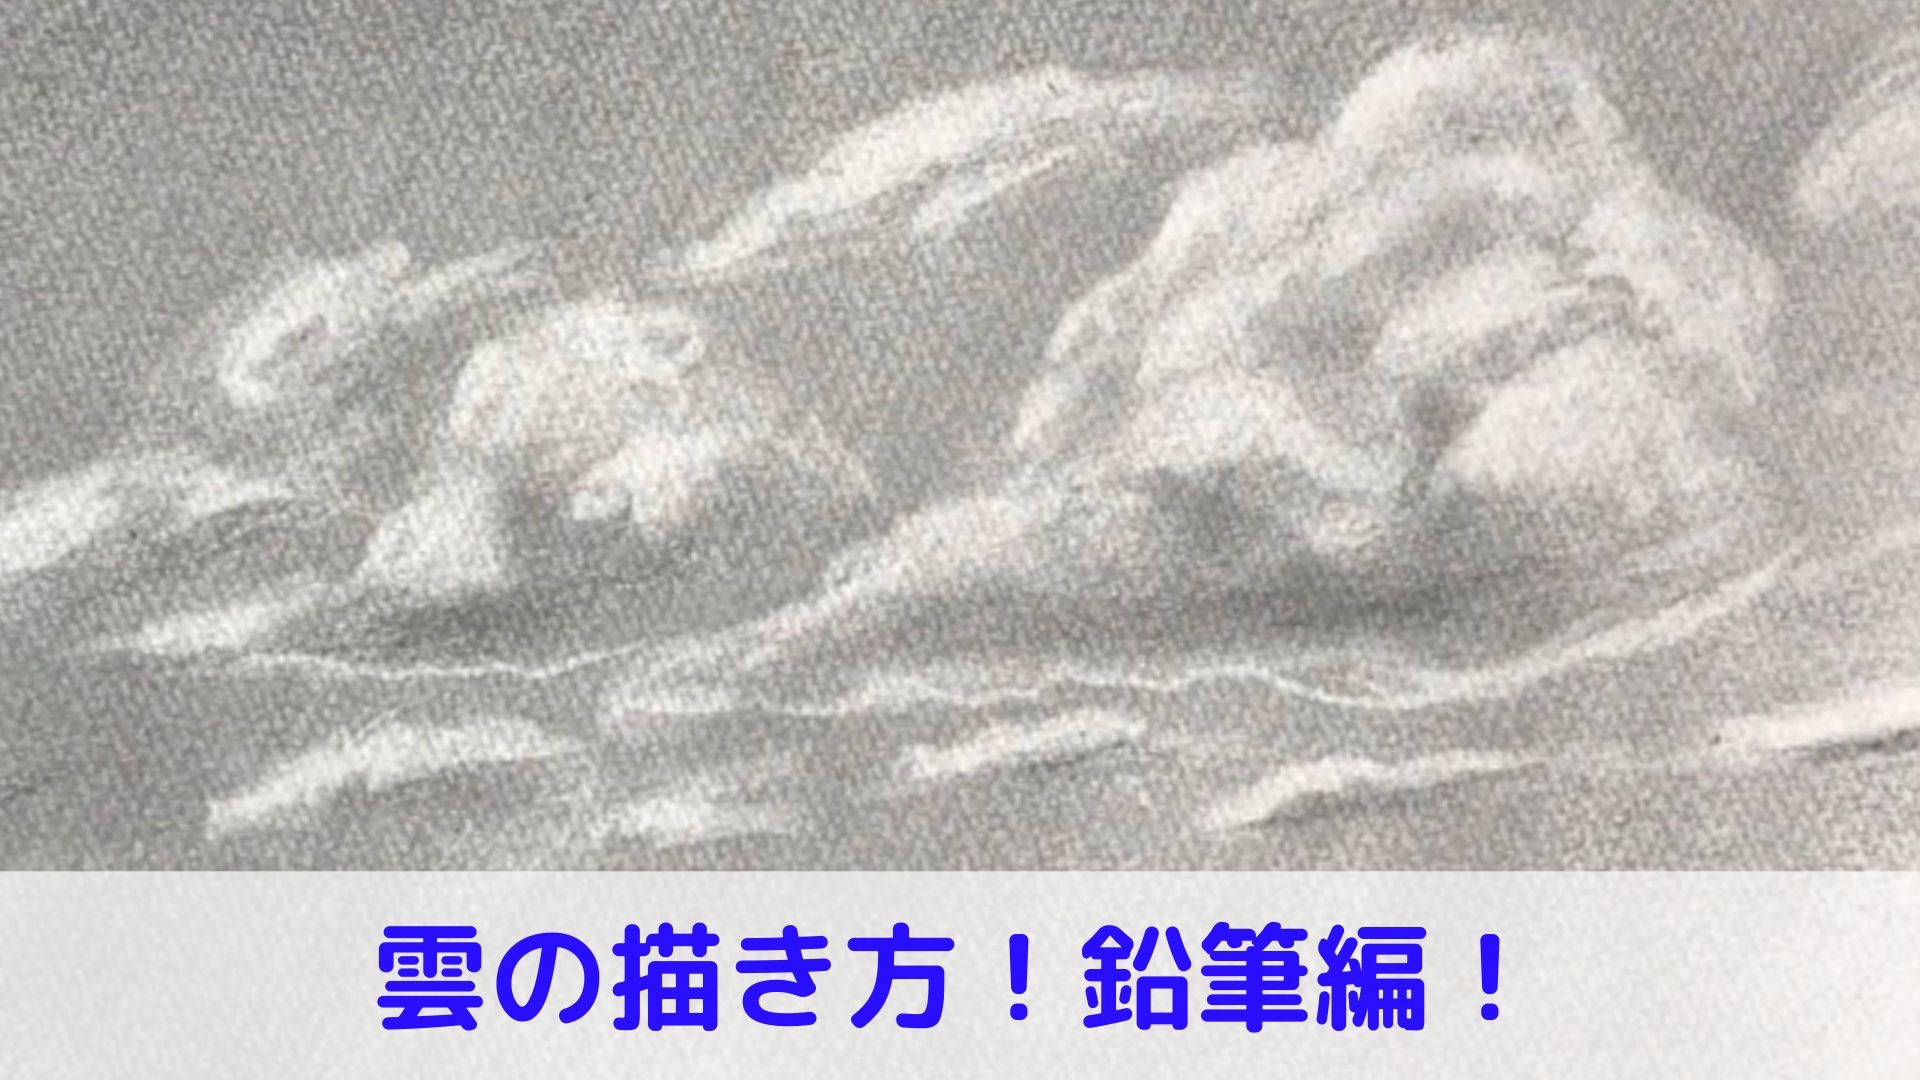 鉛筆で描く雲の描き方 デッサン 動画でわかりやすく解説 アートと日常